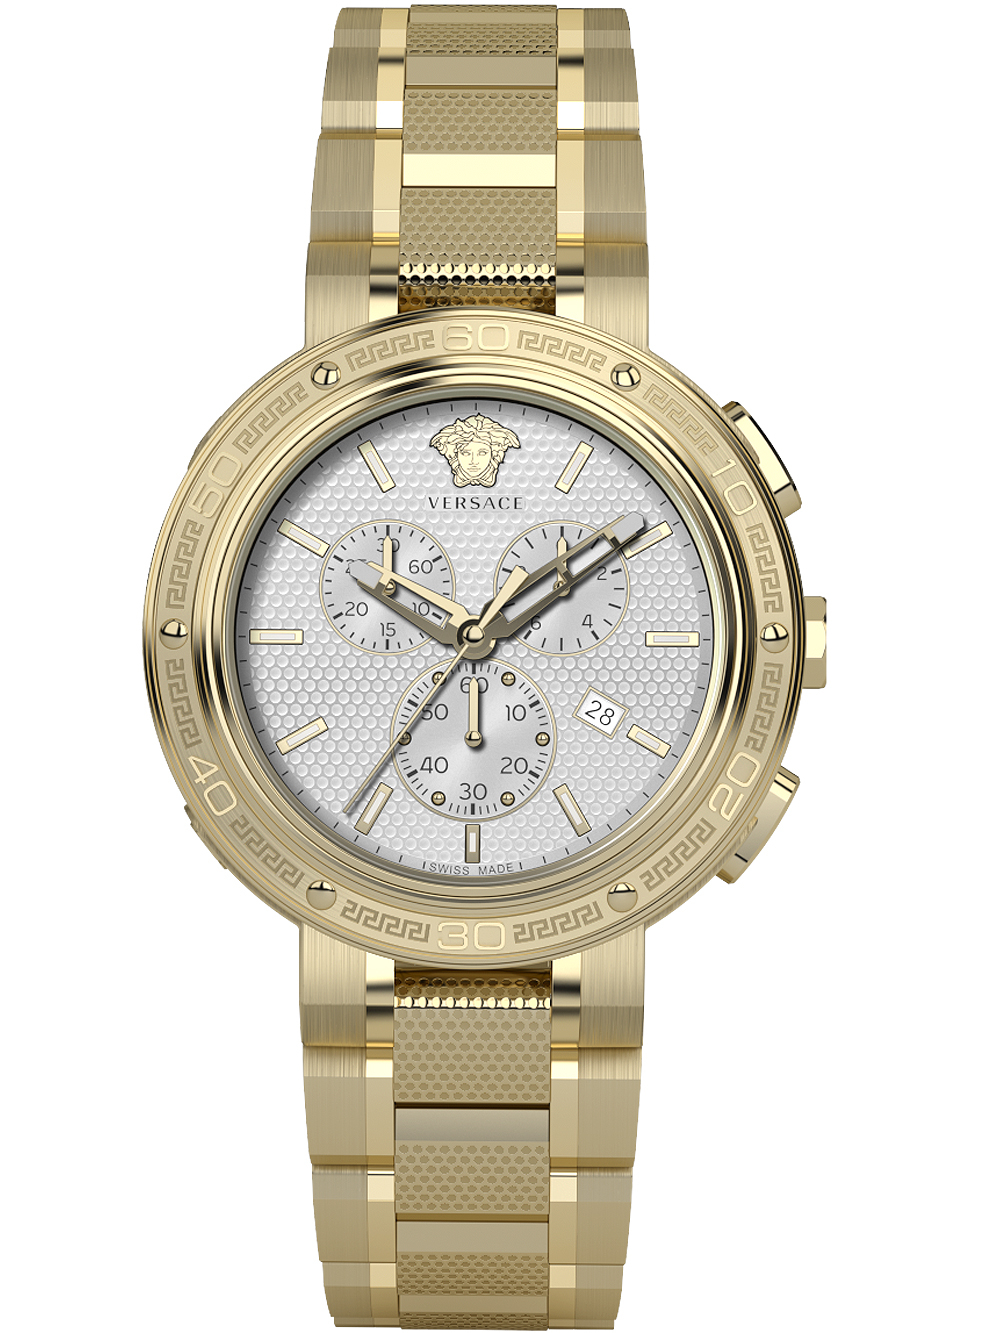 Zegarek męski Versace VE2H00621 V-Extreme Pro złoty